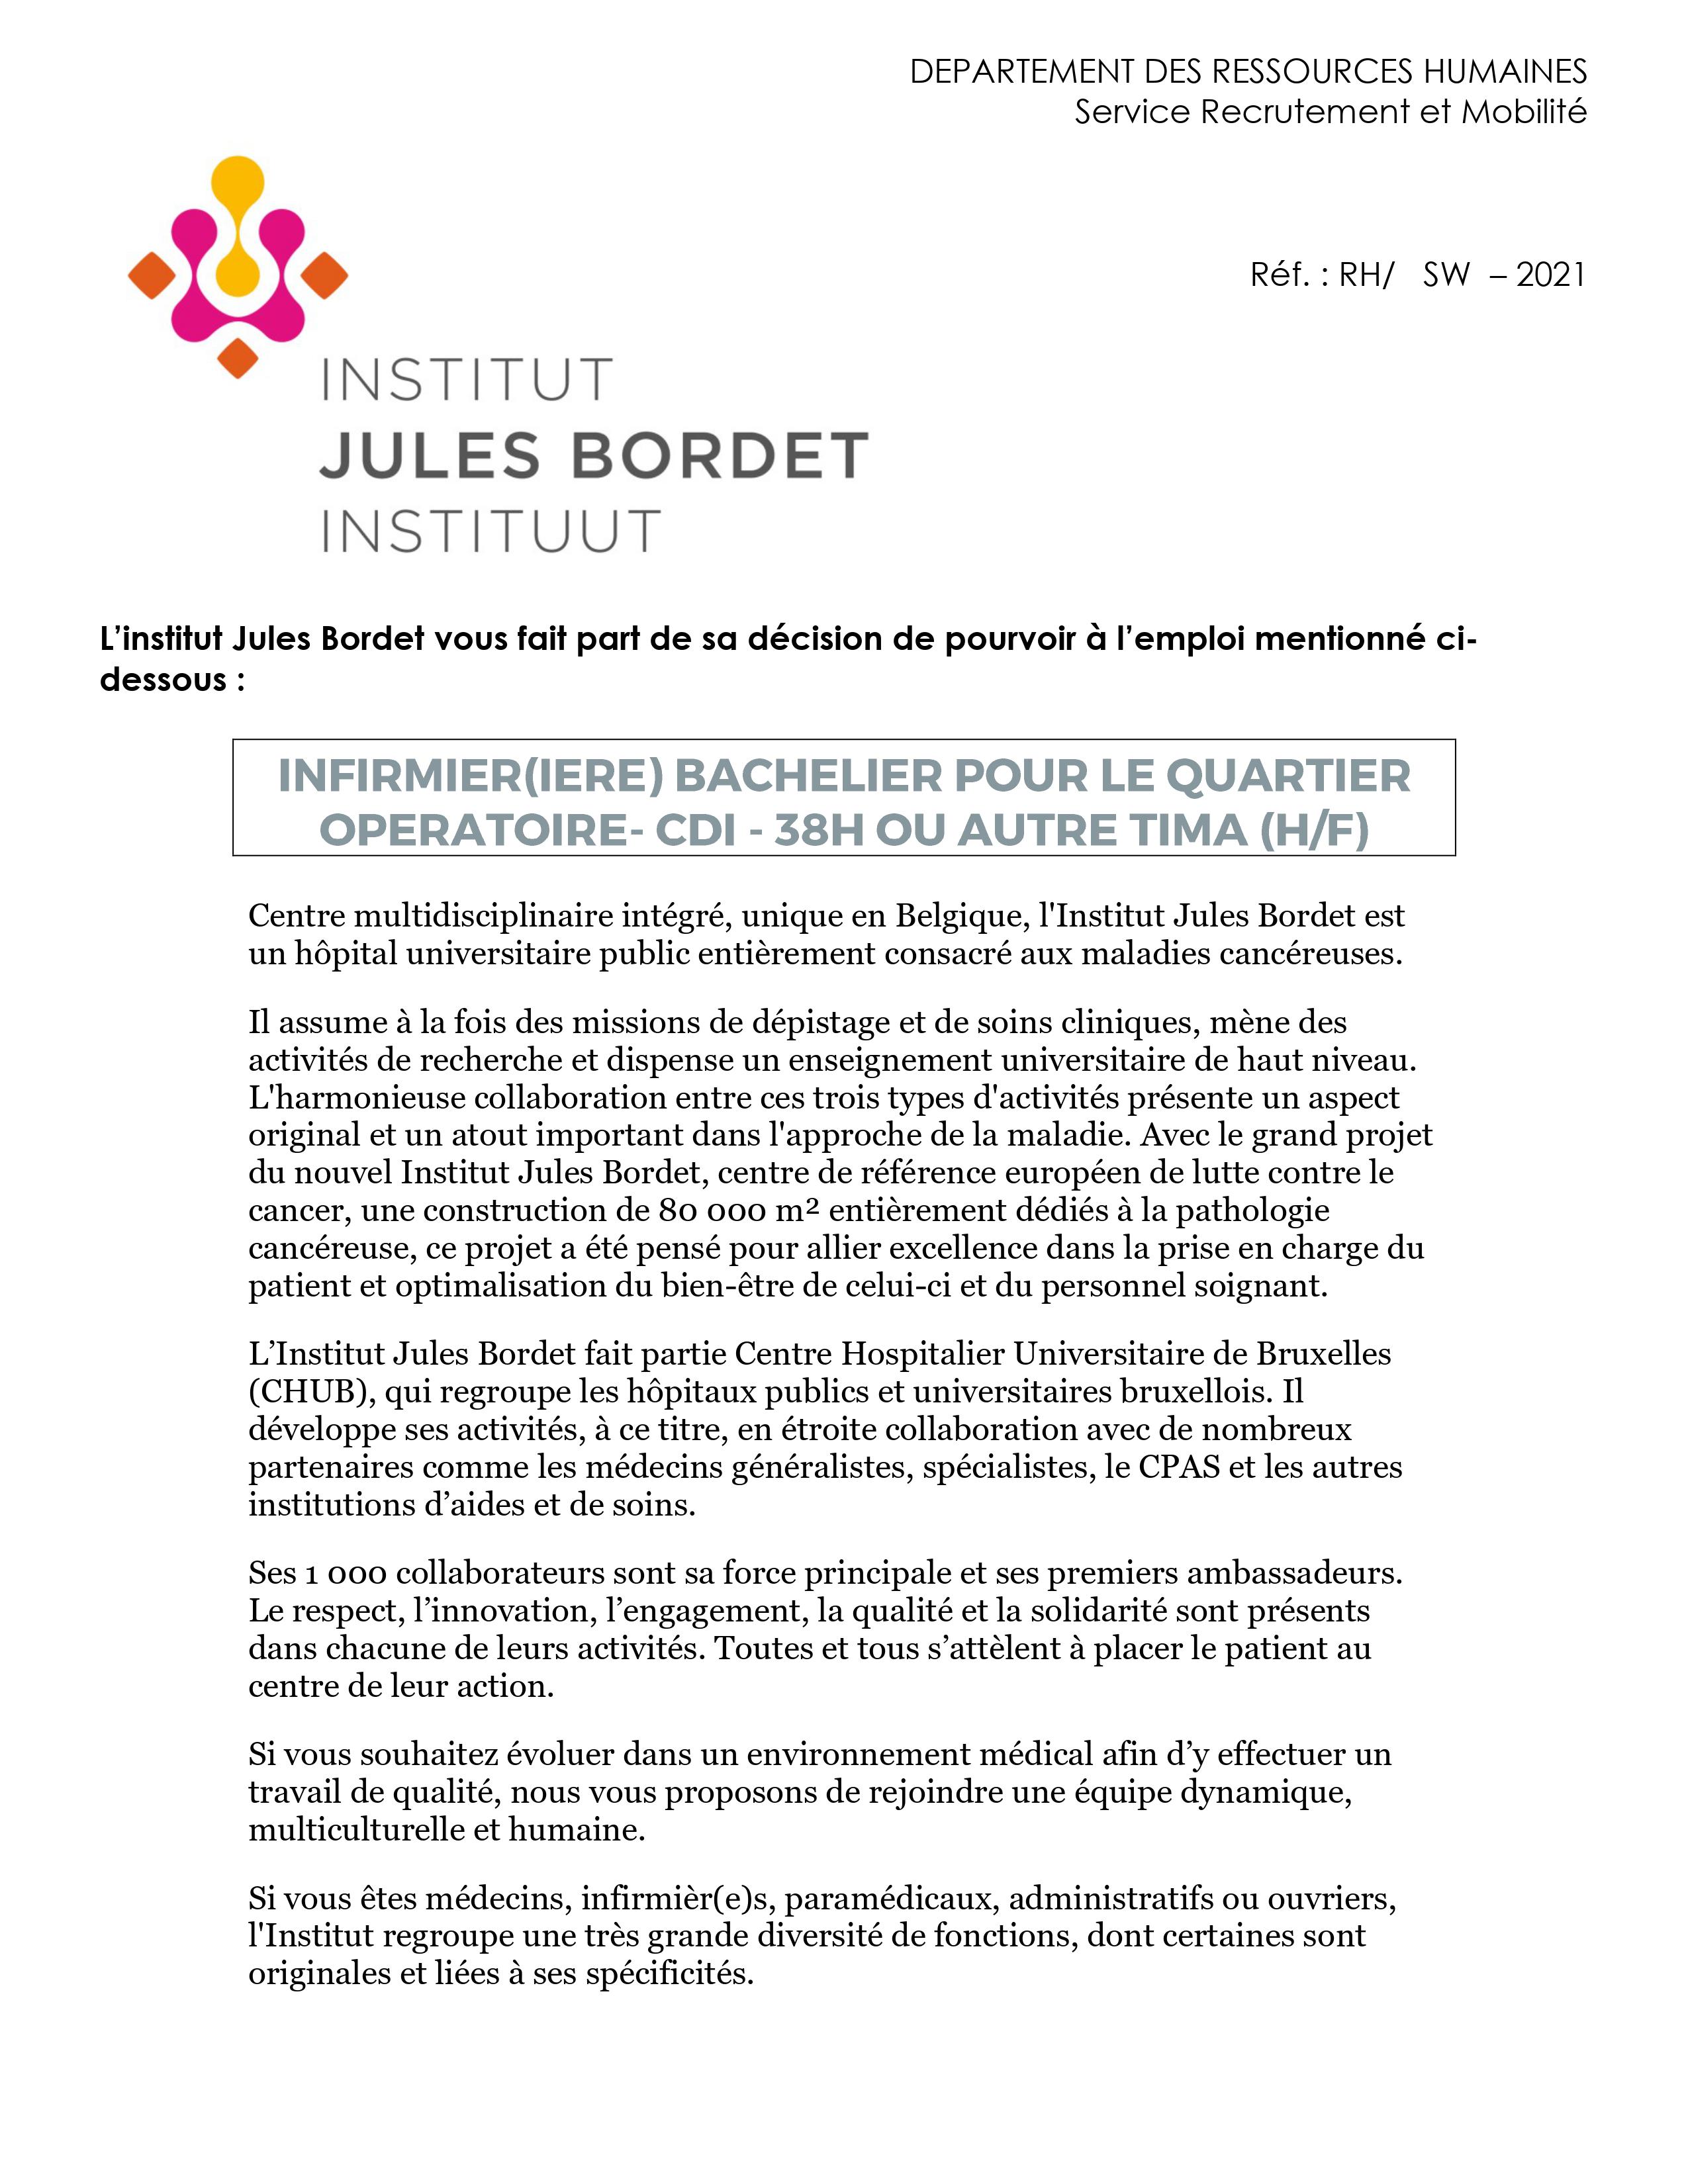 L’institut Jules Bordet engage infirmier (m/f) bachelier pour le quartier opératoire